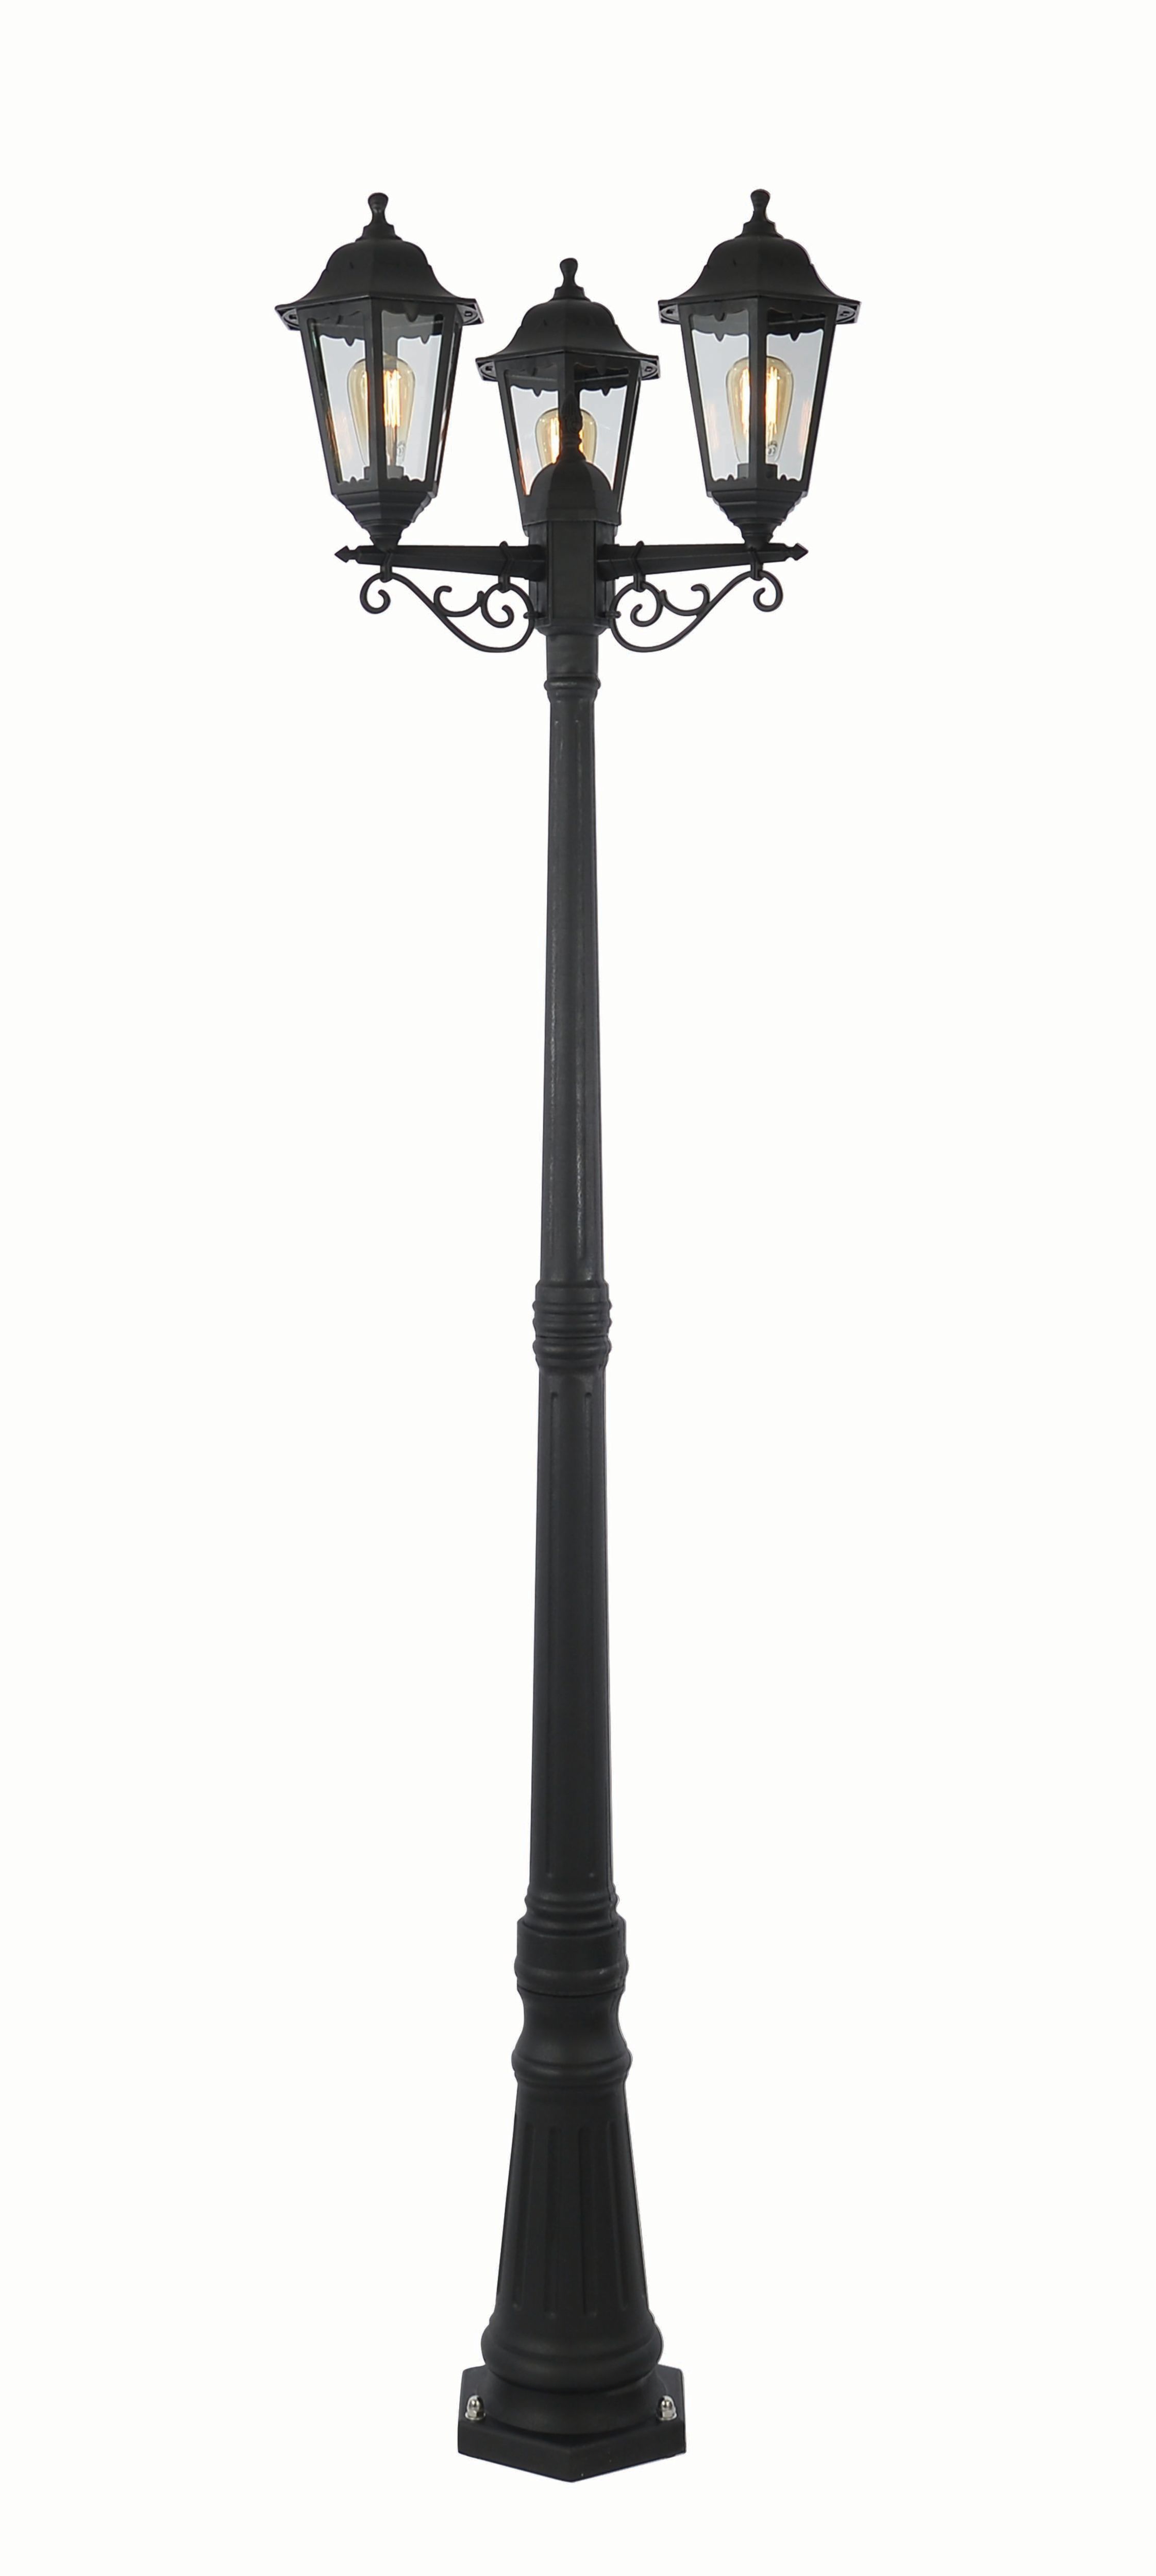 Coast Bianca Tall Post Lantern Black - 3 x 60W